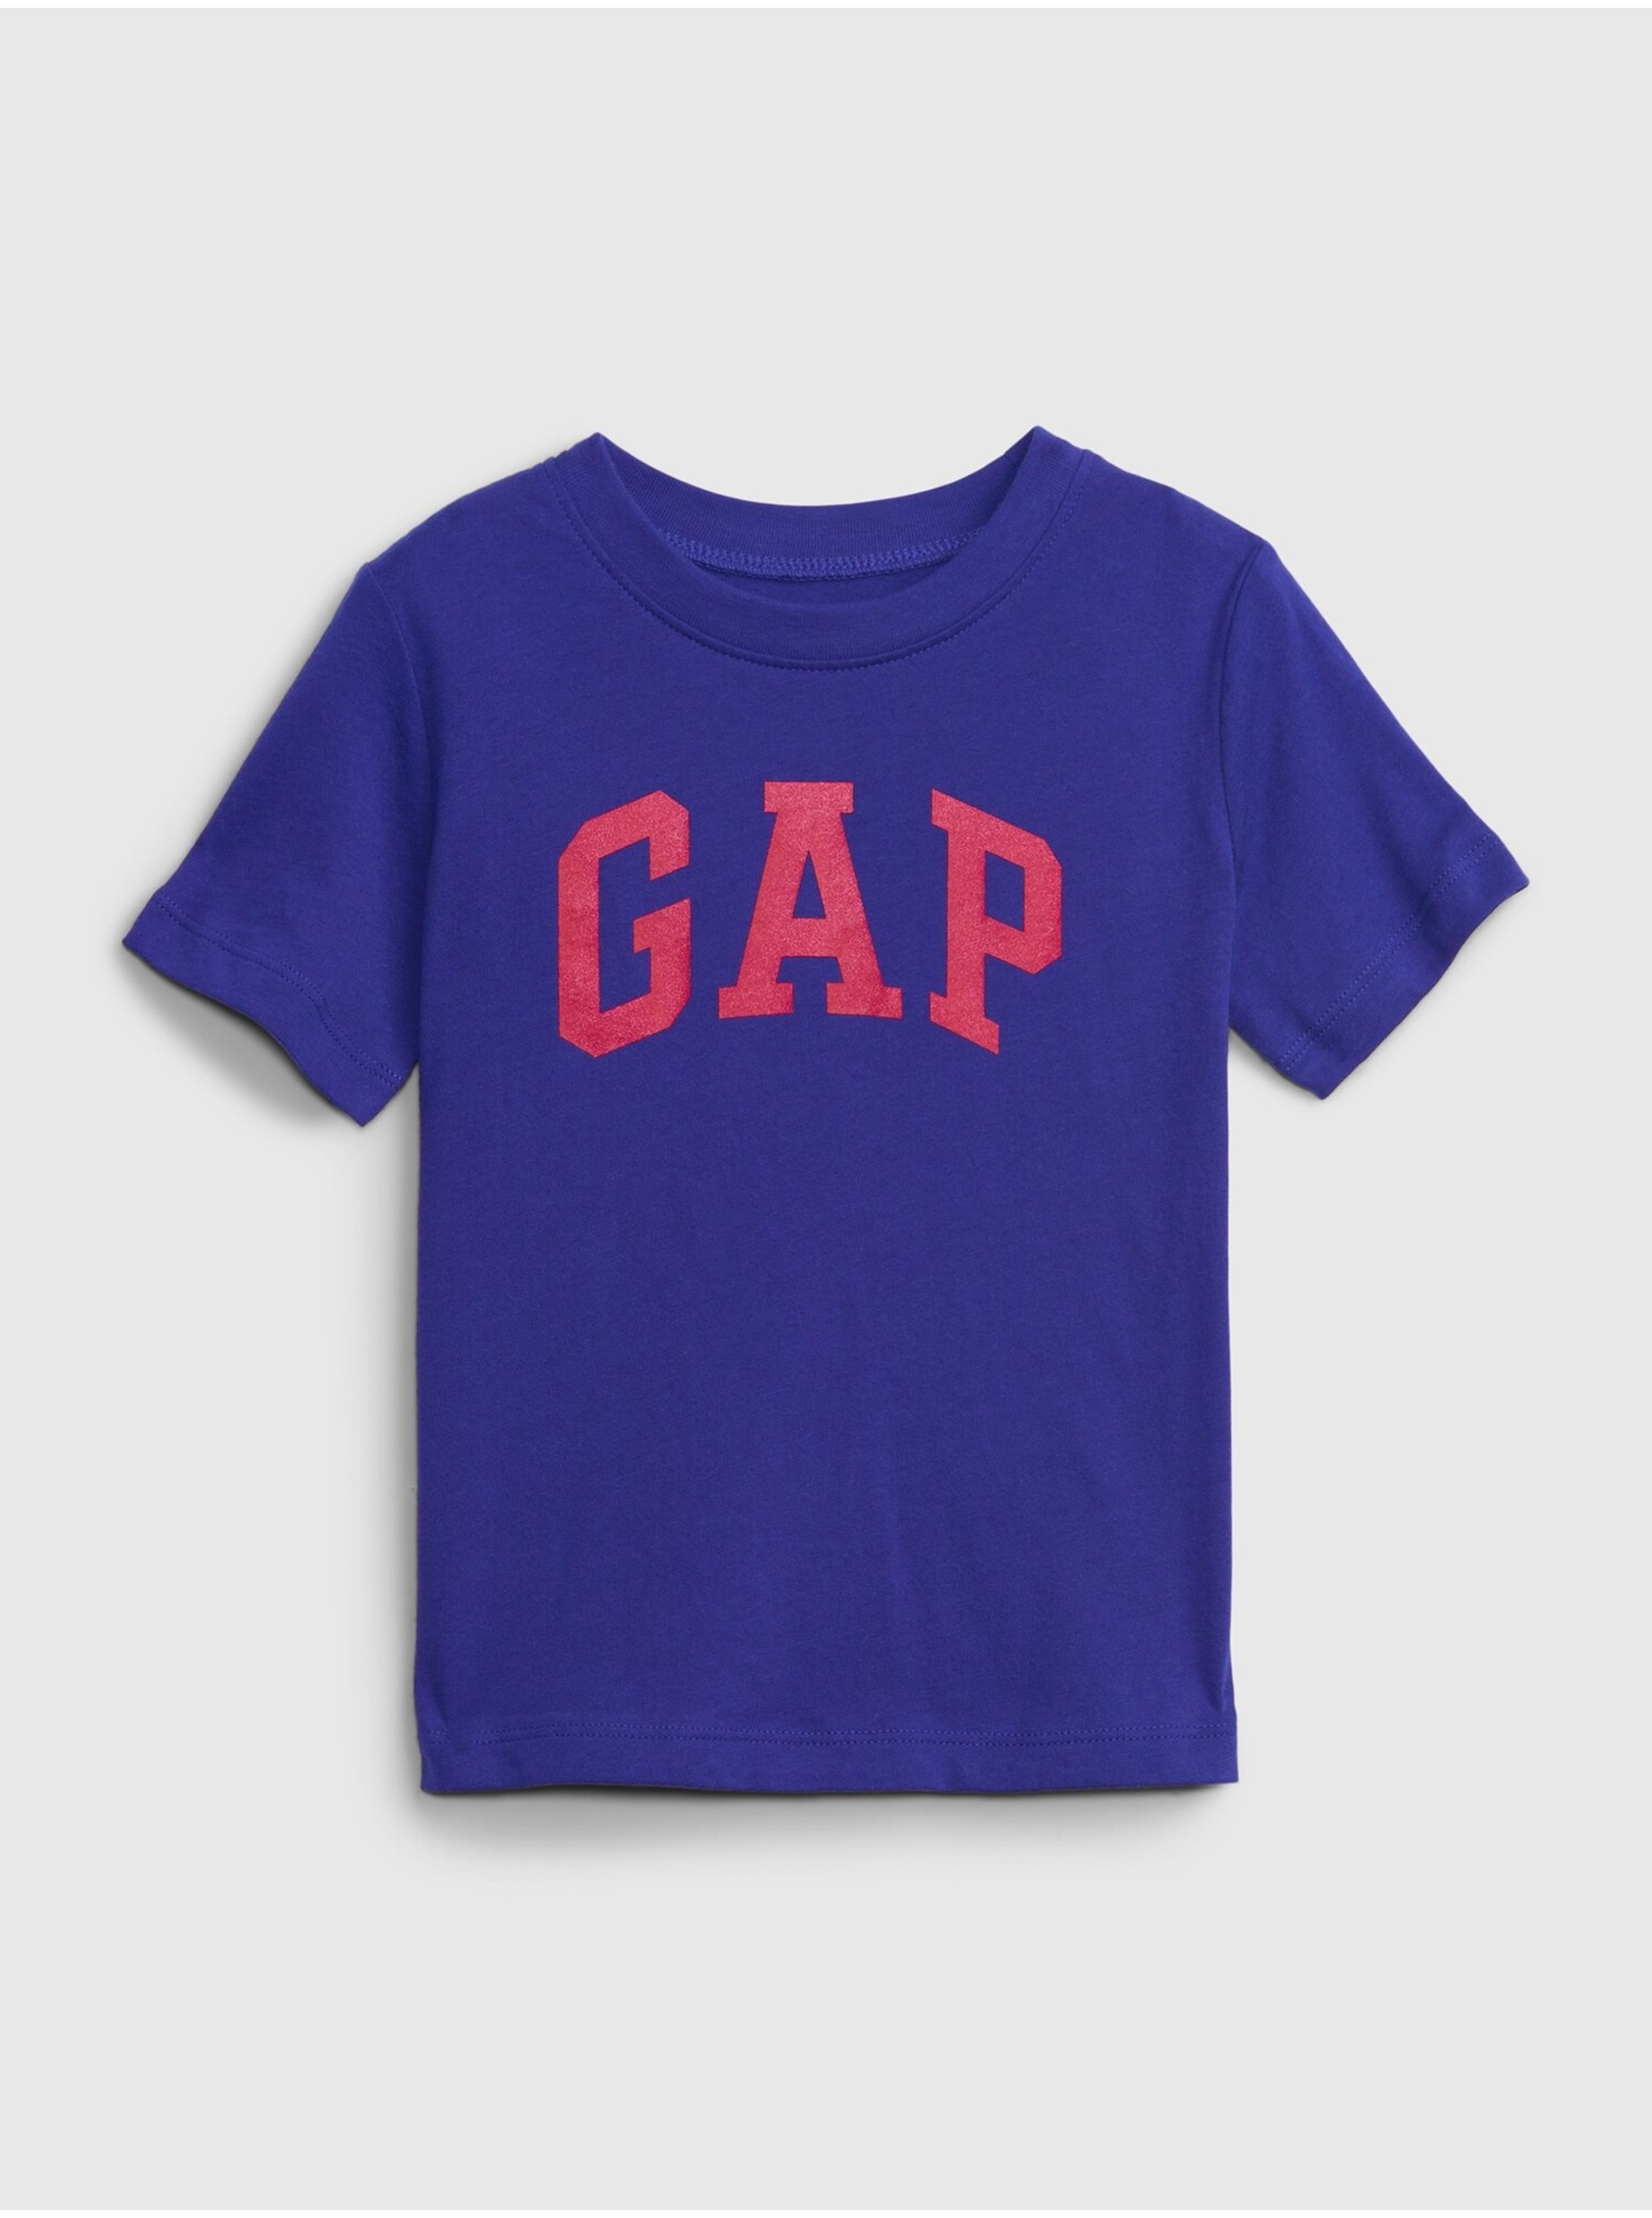 Lacno Tmavomodré chlapčenské bavlnené tričko s logom GAP